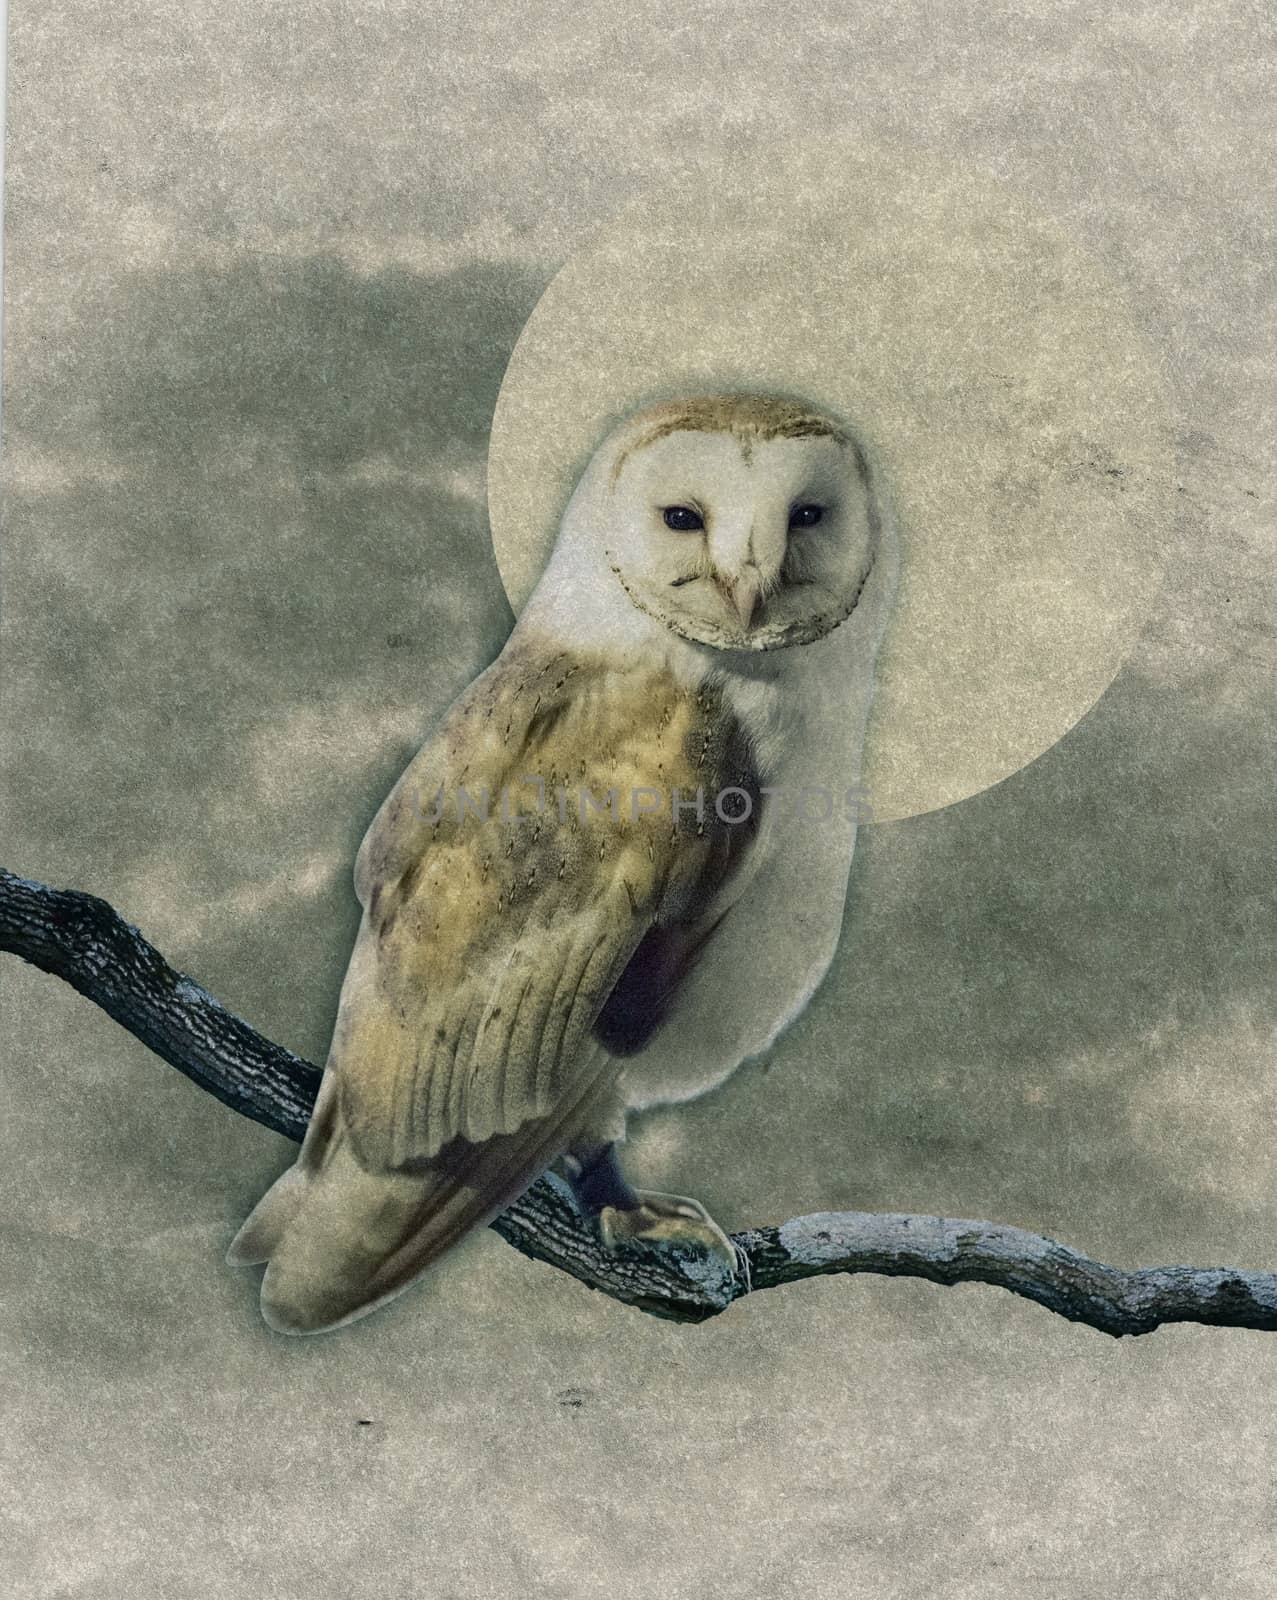 Barn Owl by Onigiristudio